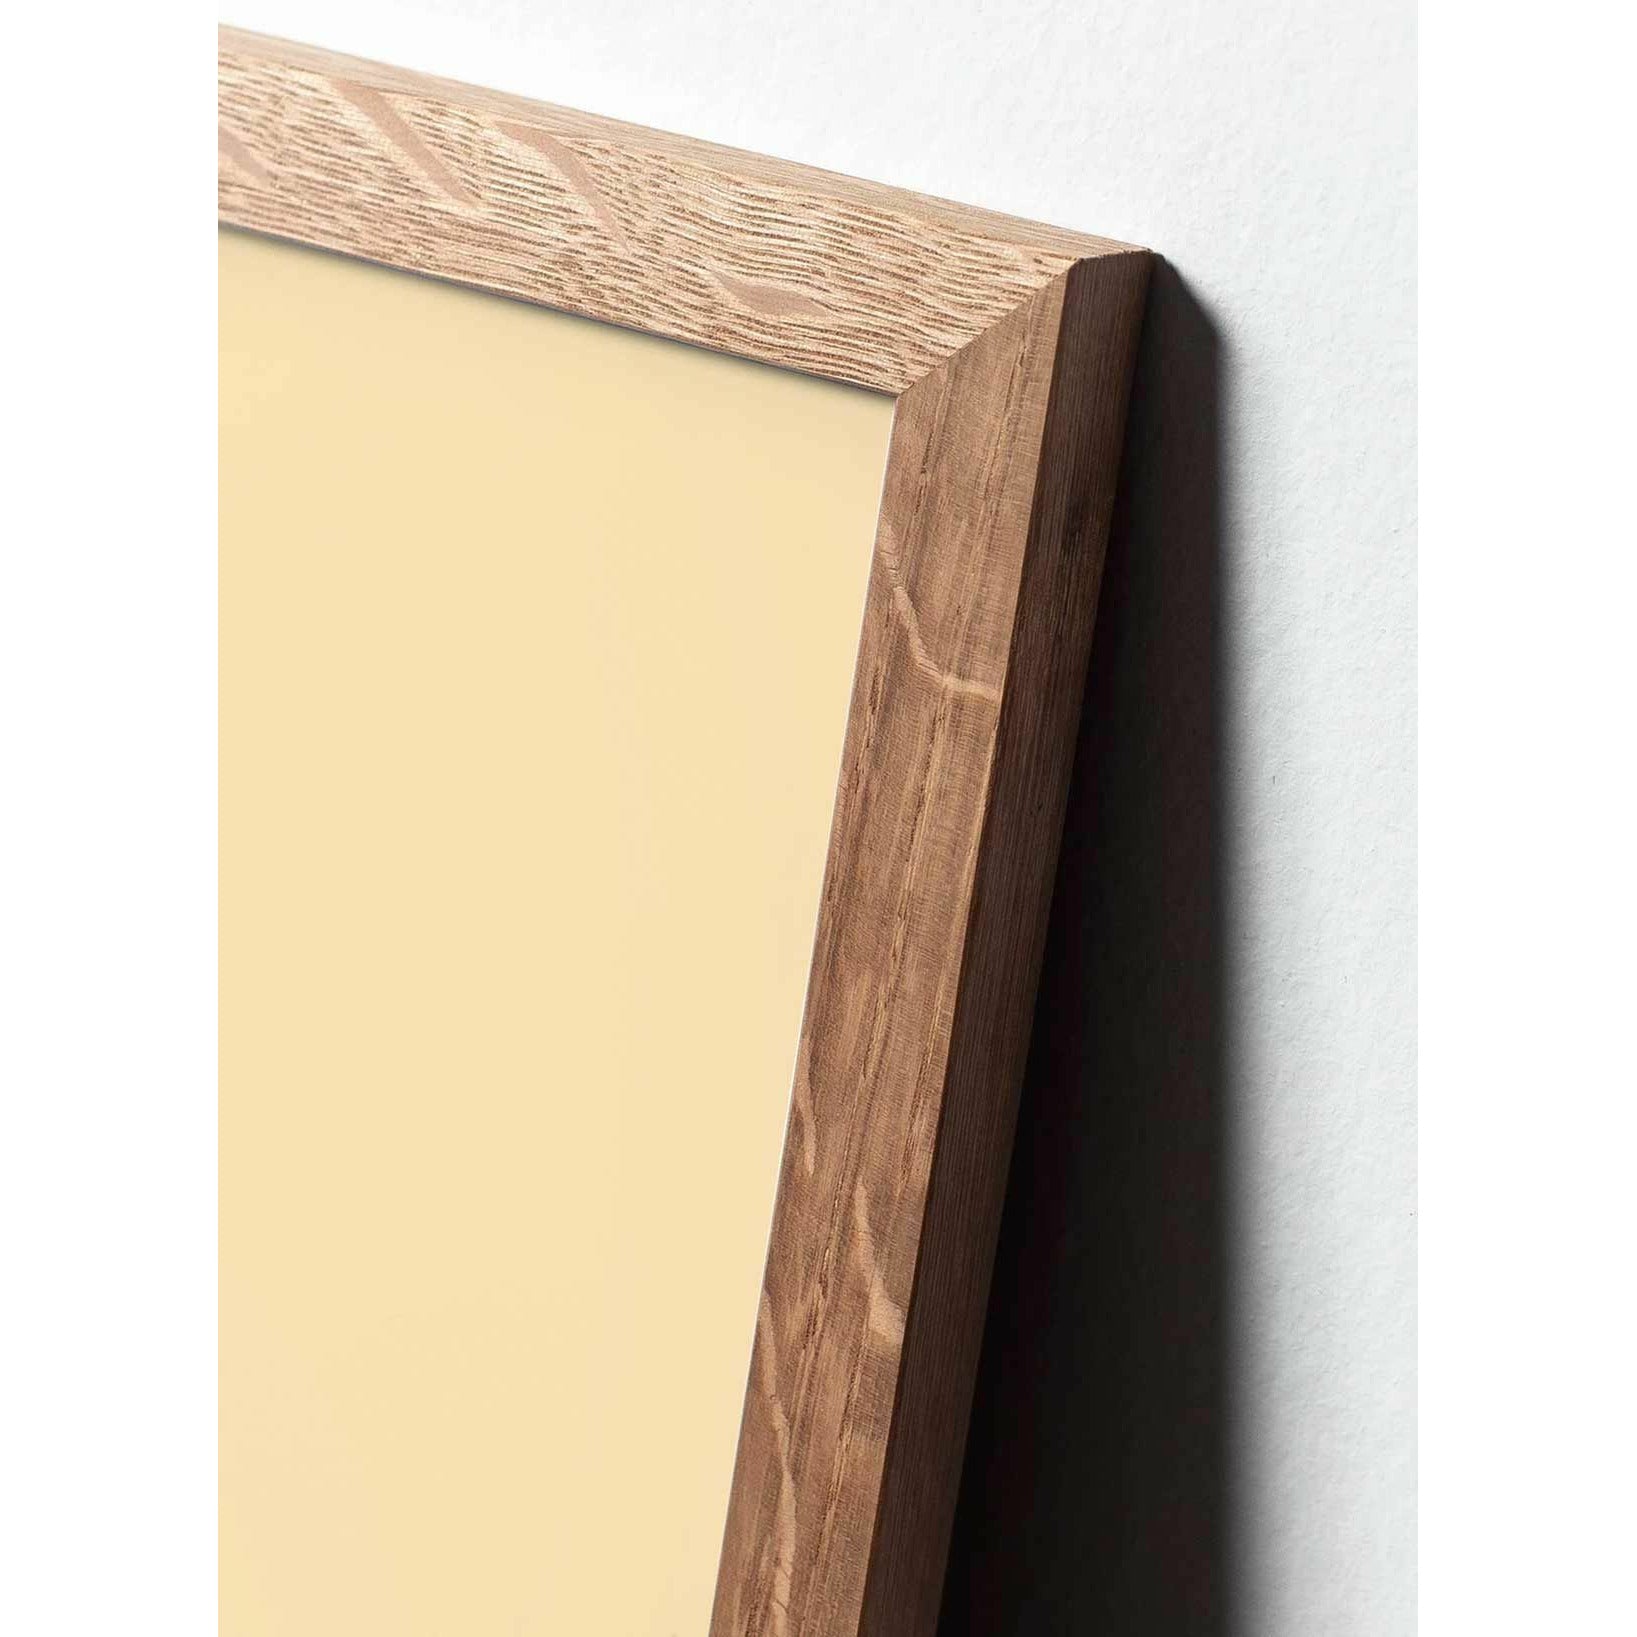 Plakat w formacie jaja pomysłu, rama wykonana z jasnego drewna 70 x 100 cm, brązowy